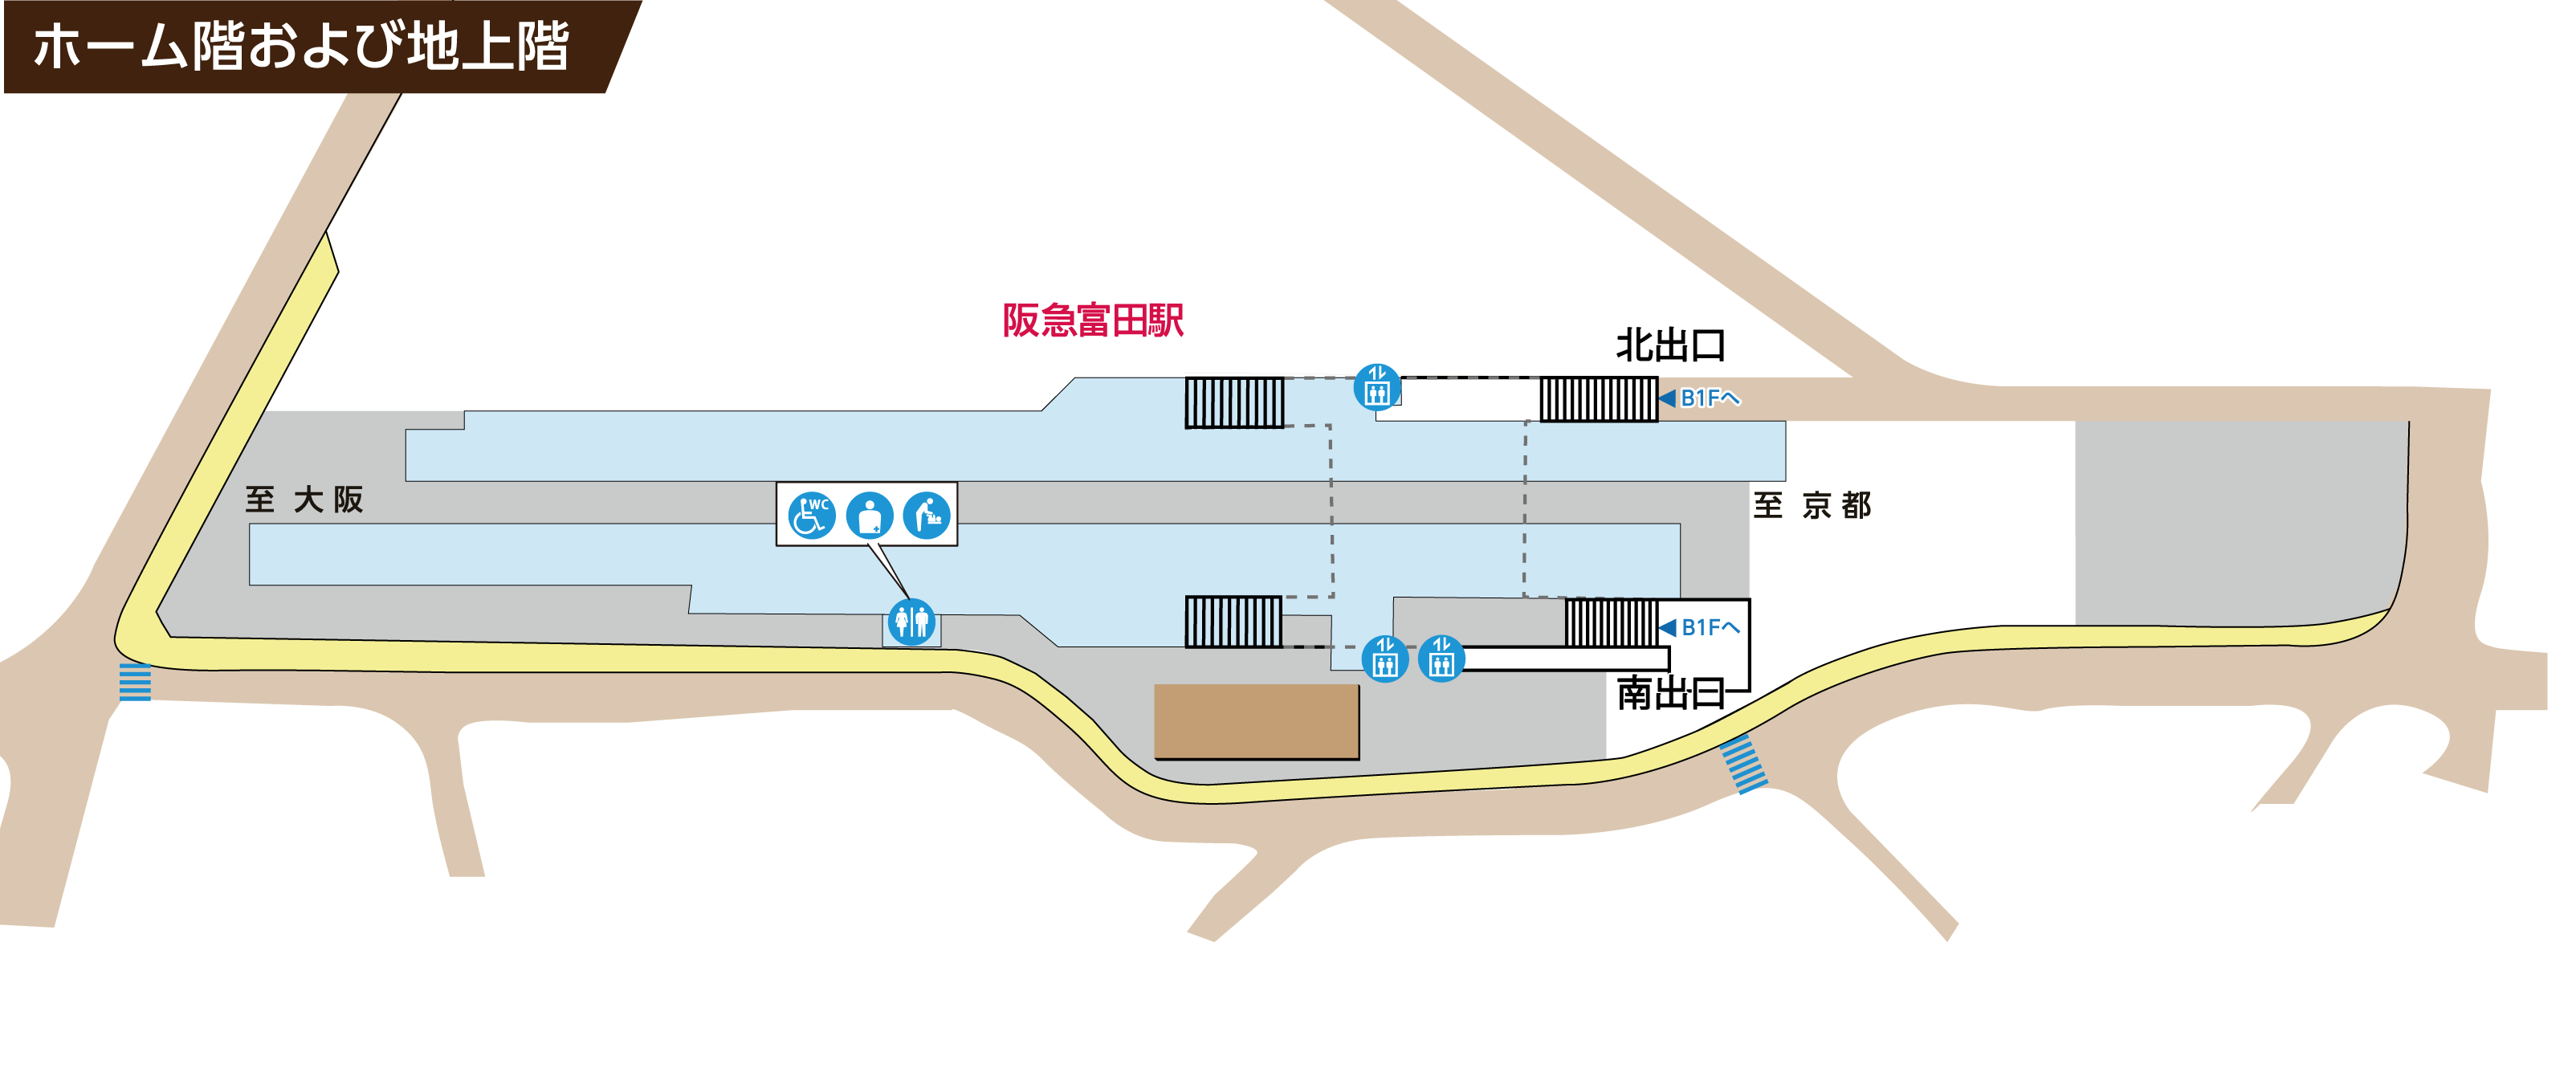 阪急富田駅　ホーム階および地上階の画像